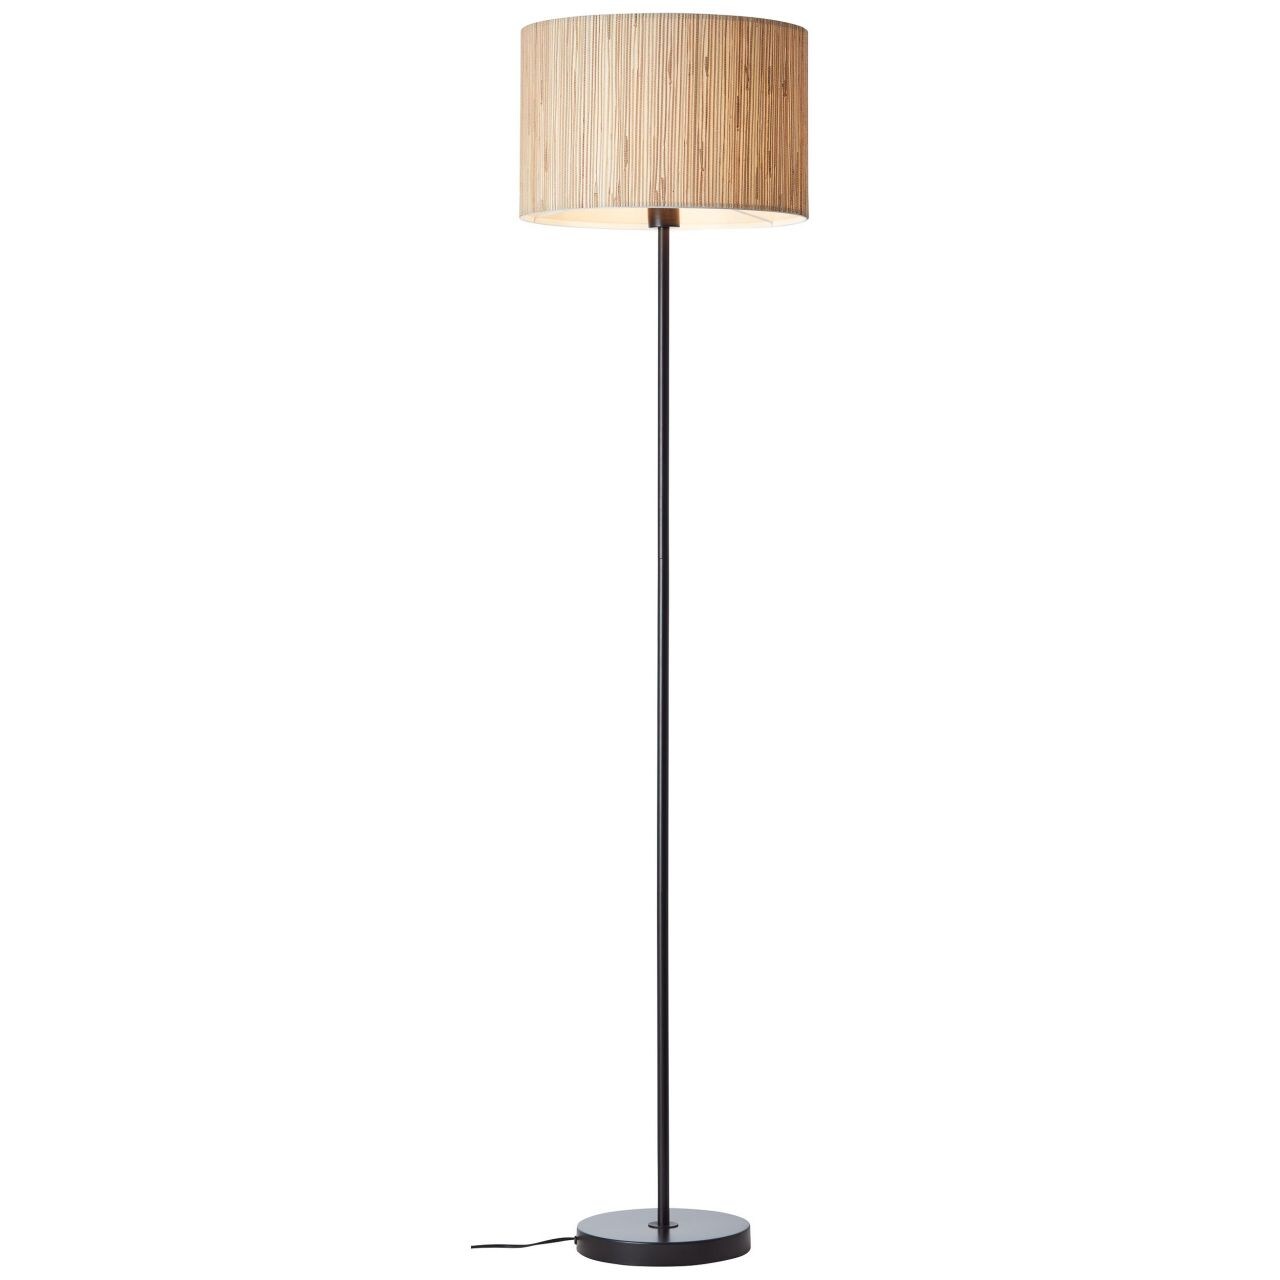 BRILLIANT Lampe, Wimea Standleuchte schwarz/natur, 1x A60, E27, 52W, Mit Fußschalter